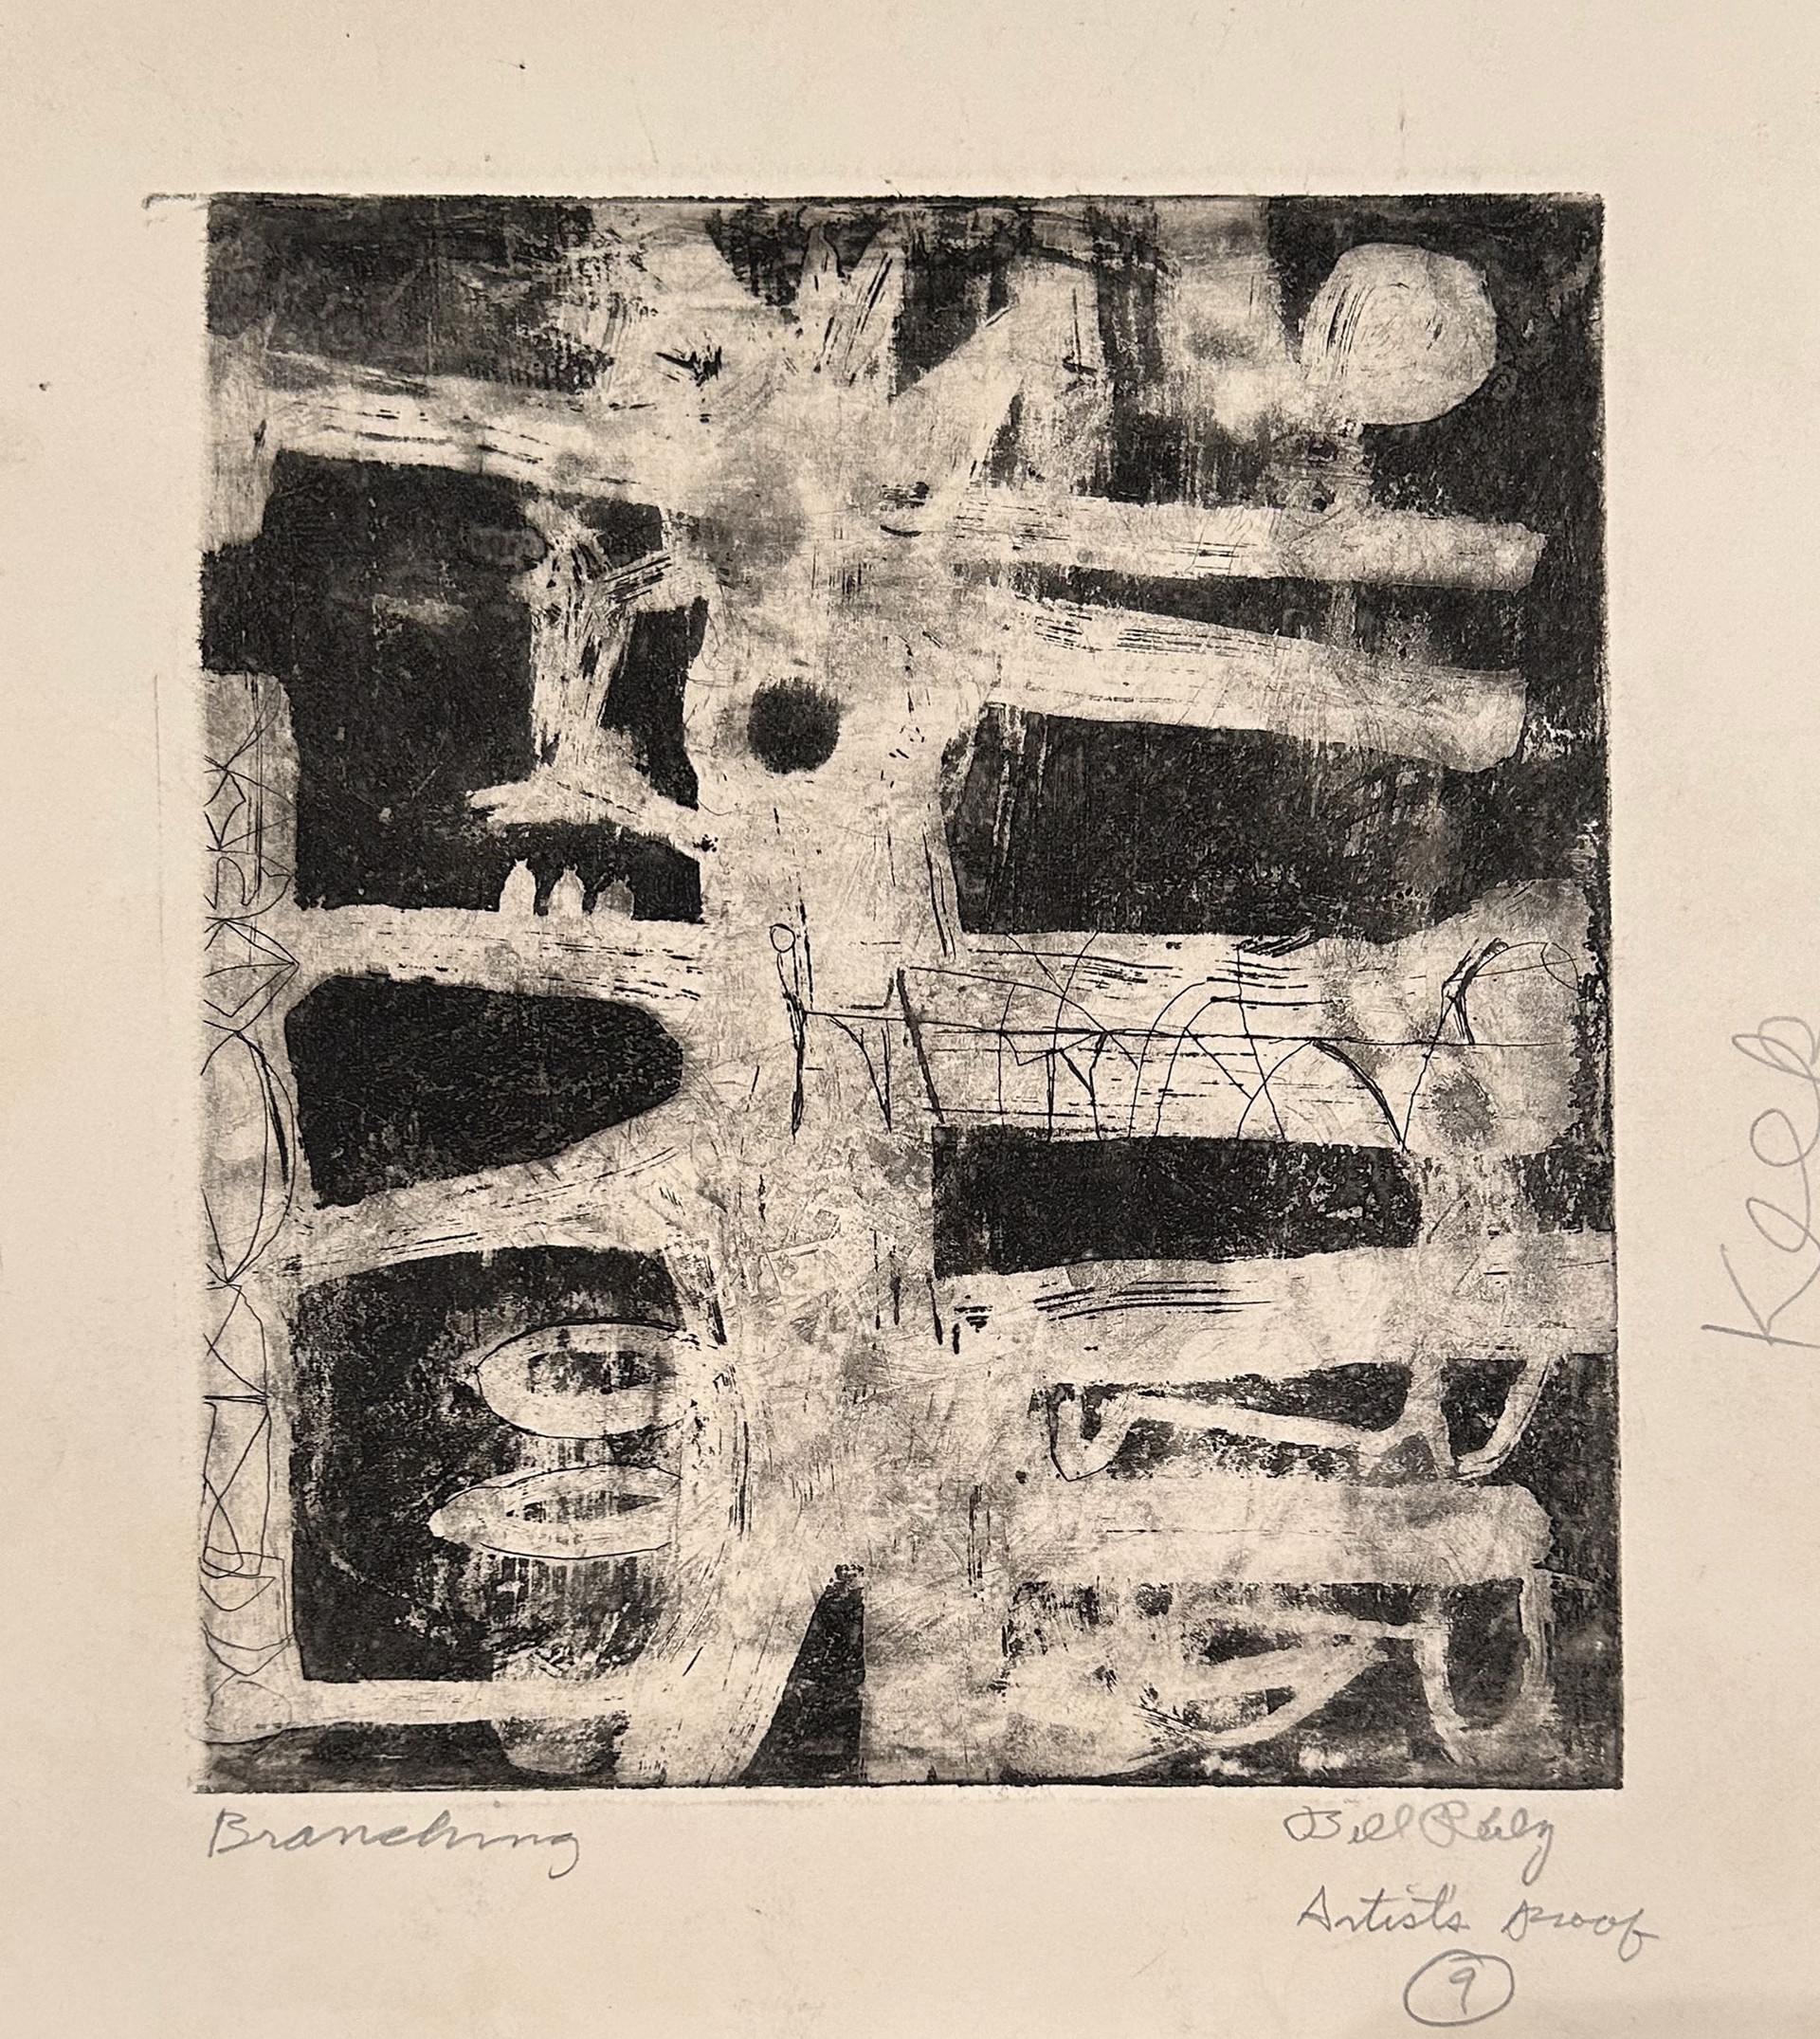 9b. Branching by Bill Reily - Prints